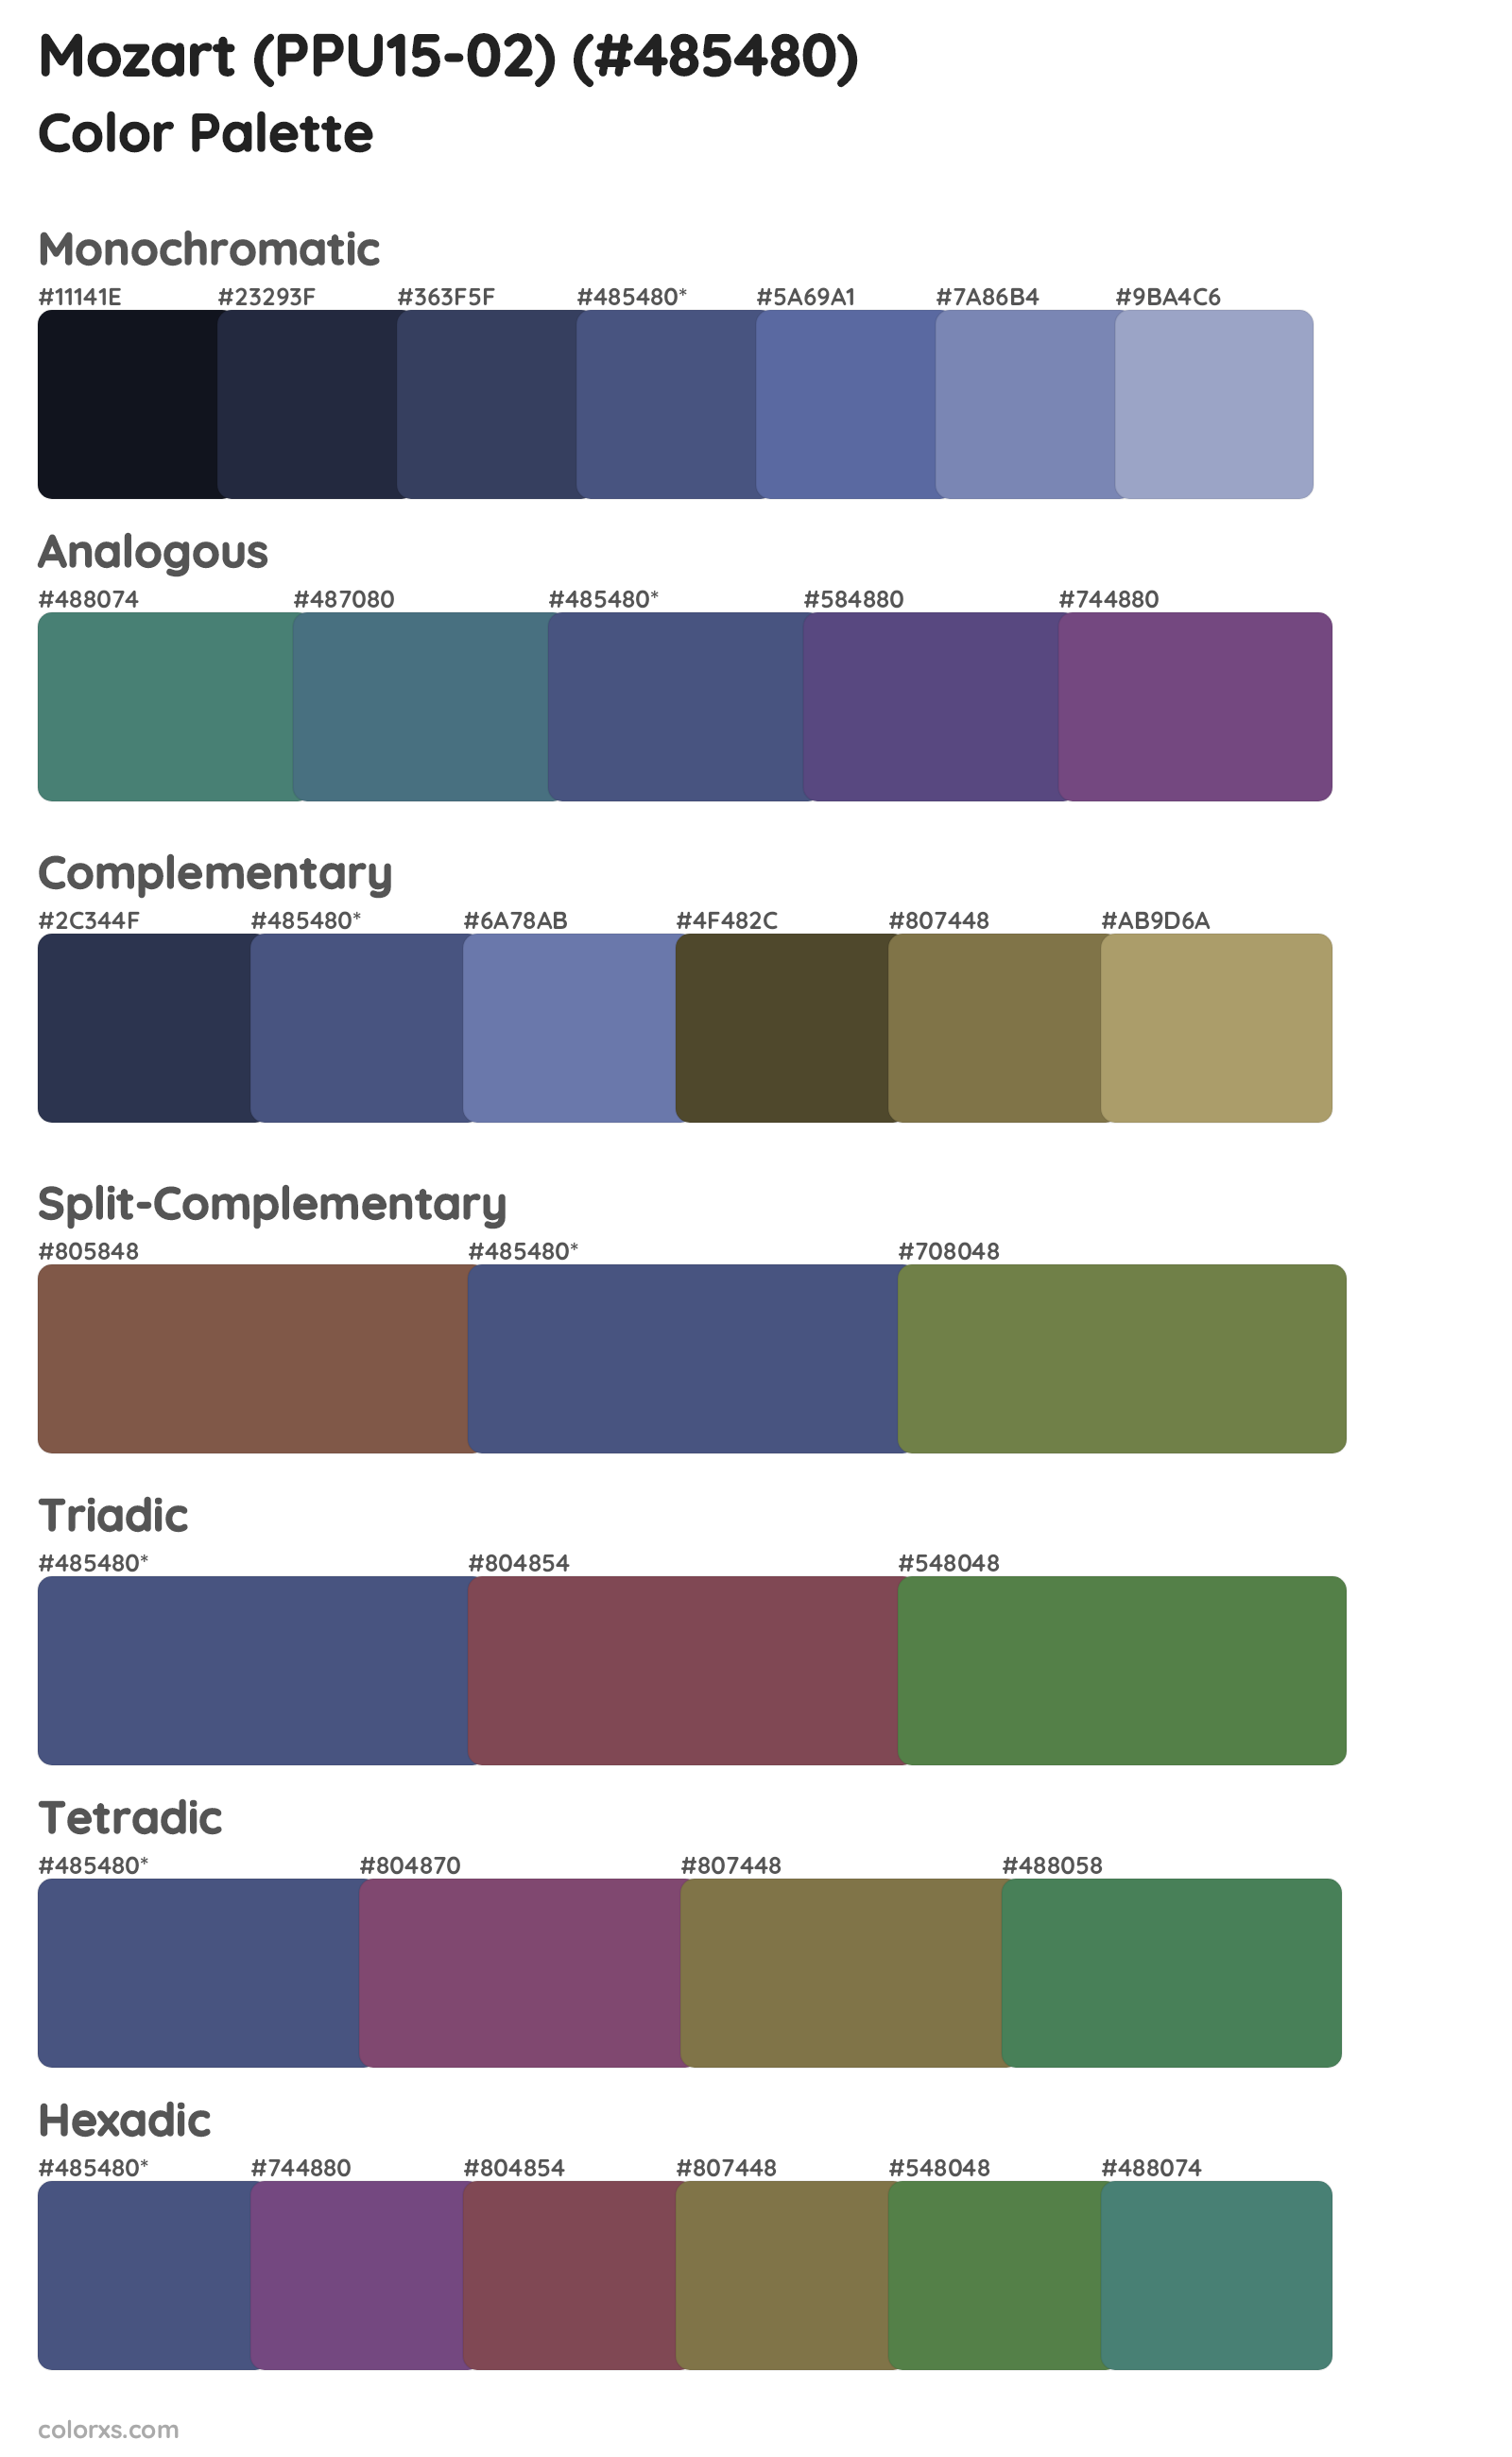 Mozart (PPU15-02) Color Scheme Palettes